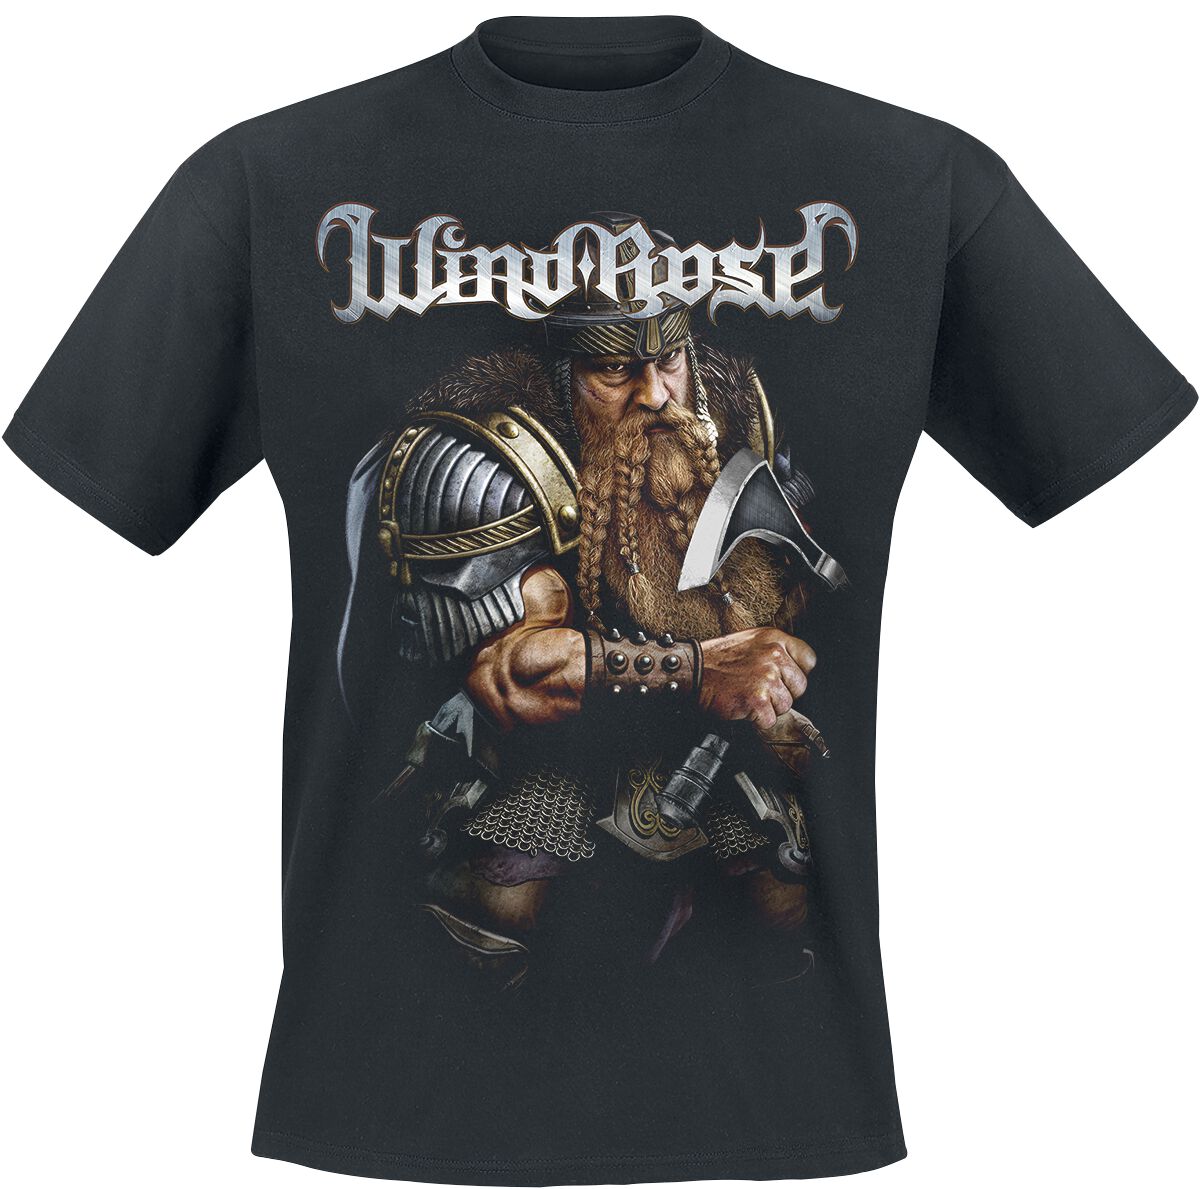 Wind Rose T-Shirt - Dwarf - S bis 4XL - für Männer - Größe L - schwarz  - Lizenziertes Merchandise!